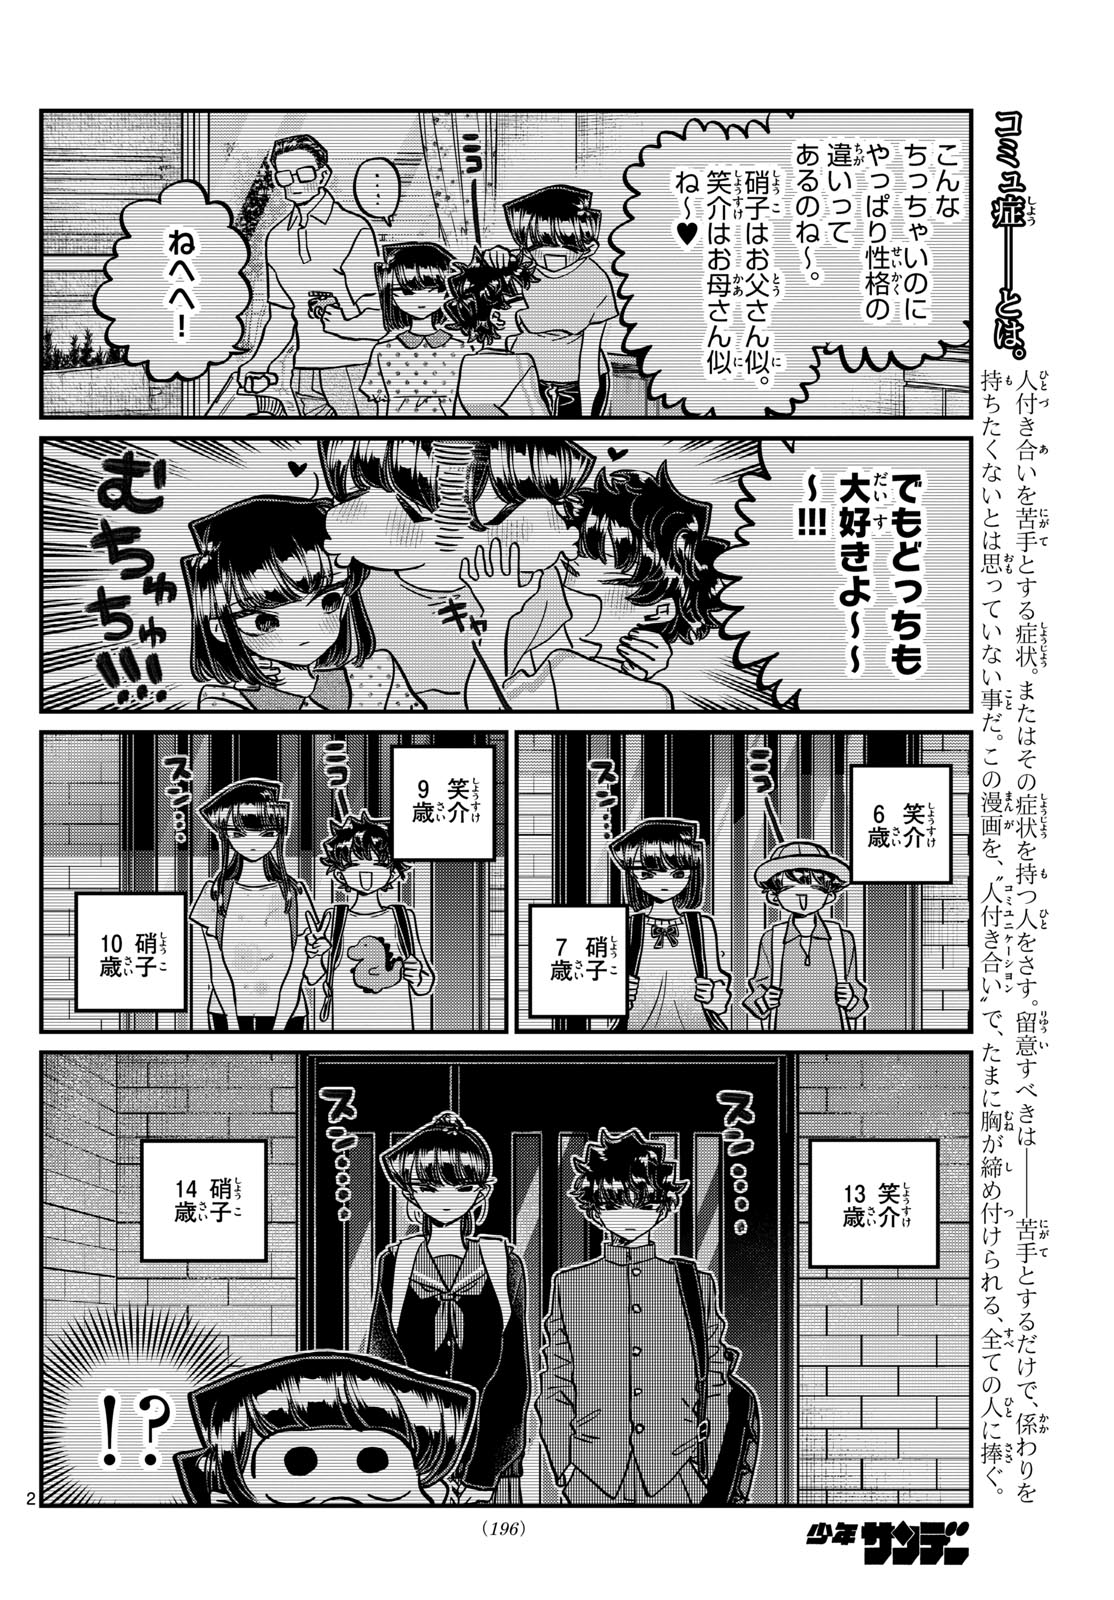 Komi-san wa Komyushou Desu - Chapter 460 - Page 2